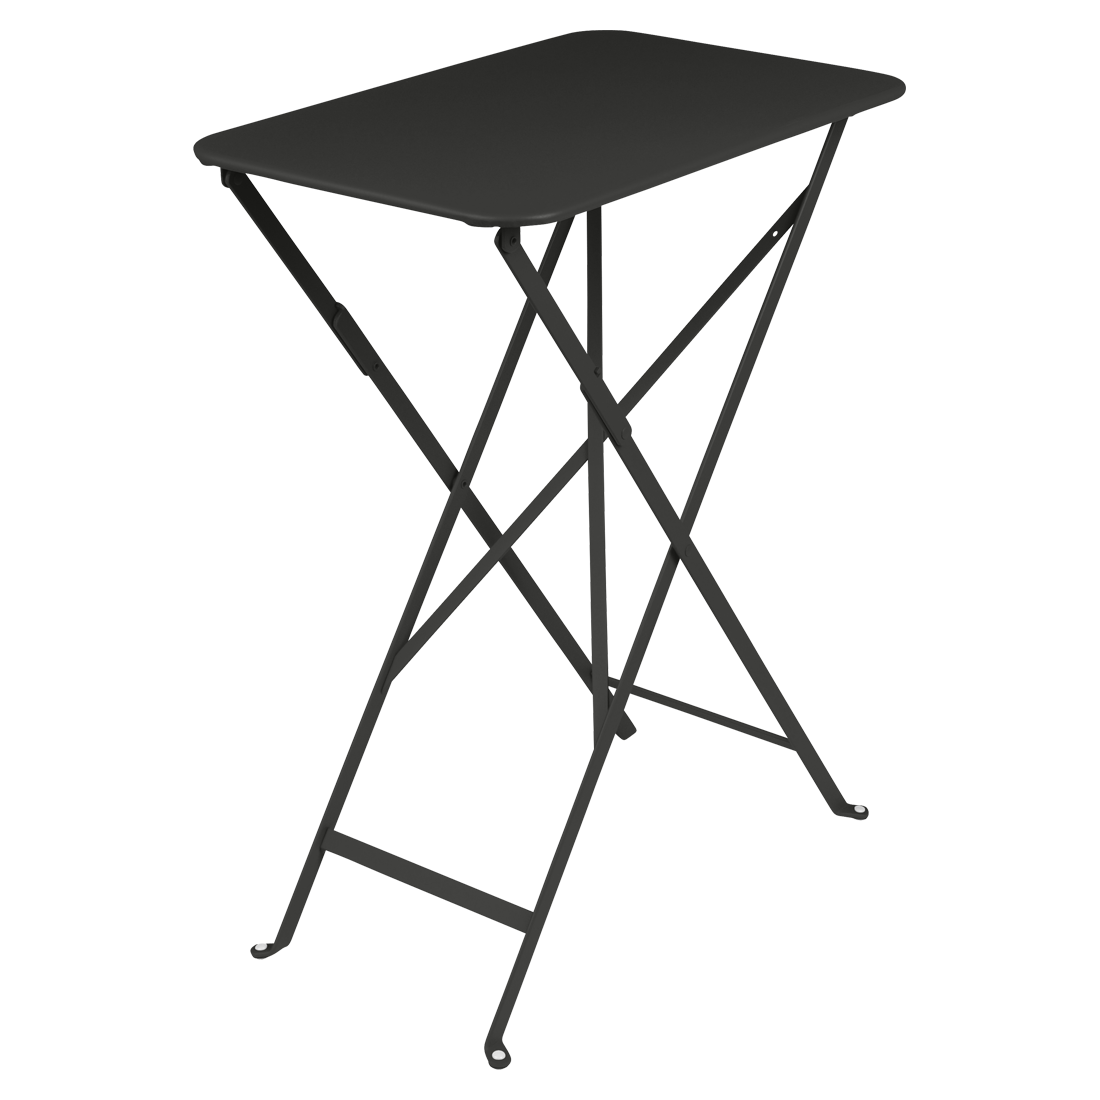 Černý kovový skládací stůl Fermob Bistro 37 x 57 cm